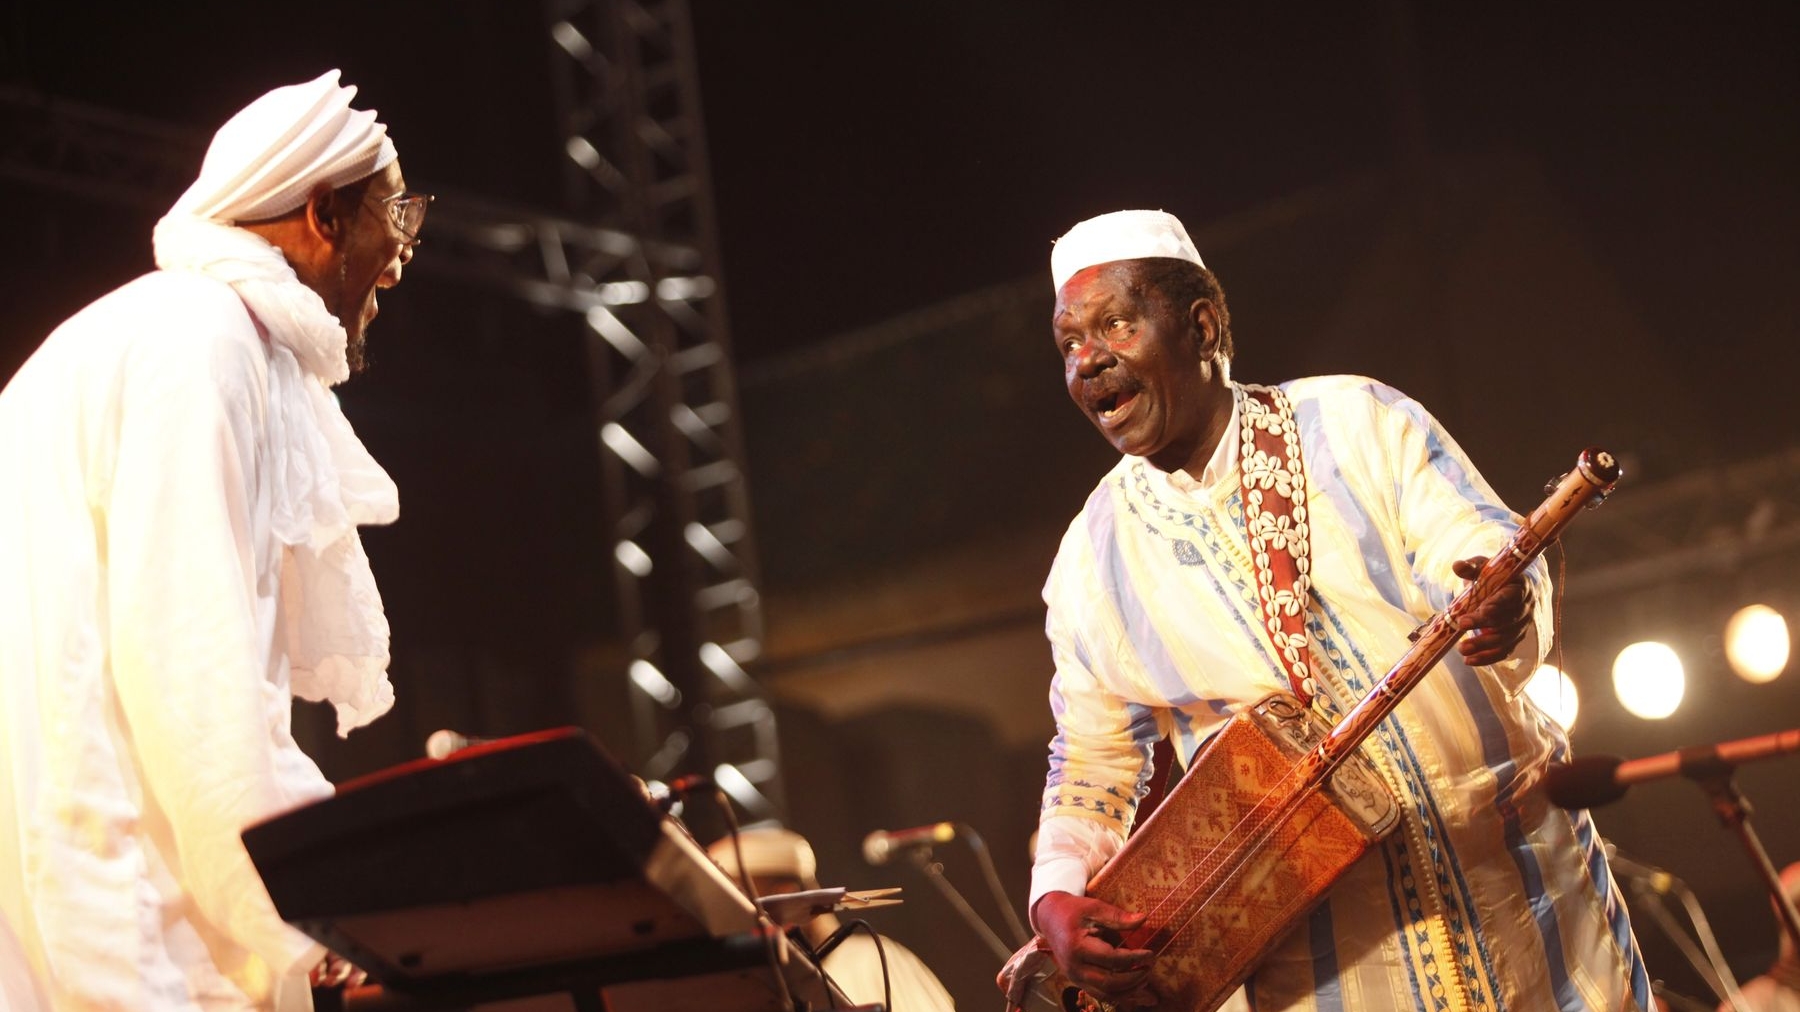 Grande rencontre musicale et artistique, sur la scène de Moulay Hassan, entre Maâlem Mokhtar Guinea et Omar Sosa
